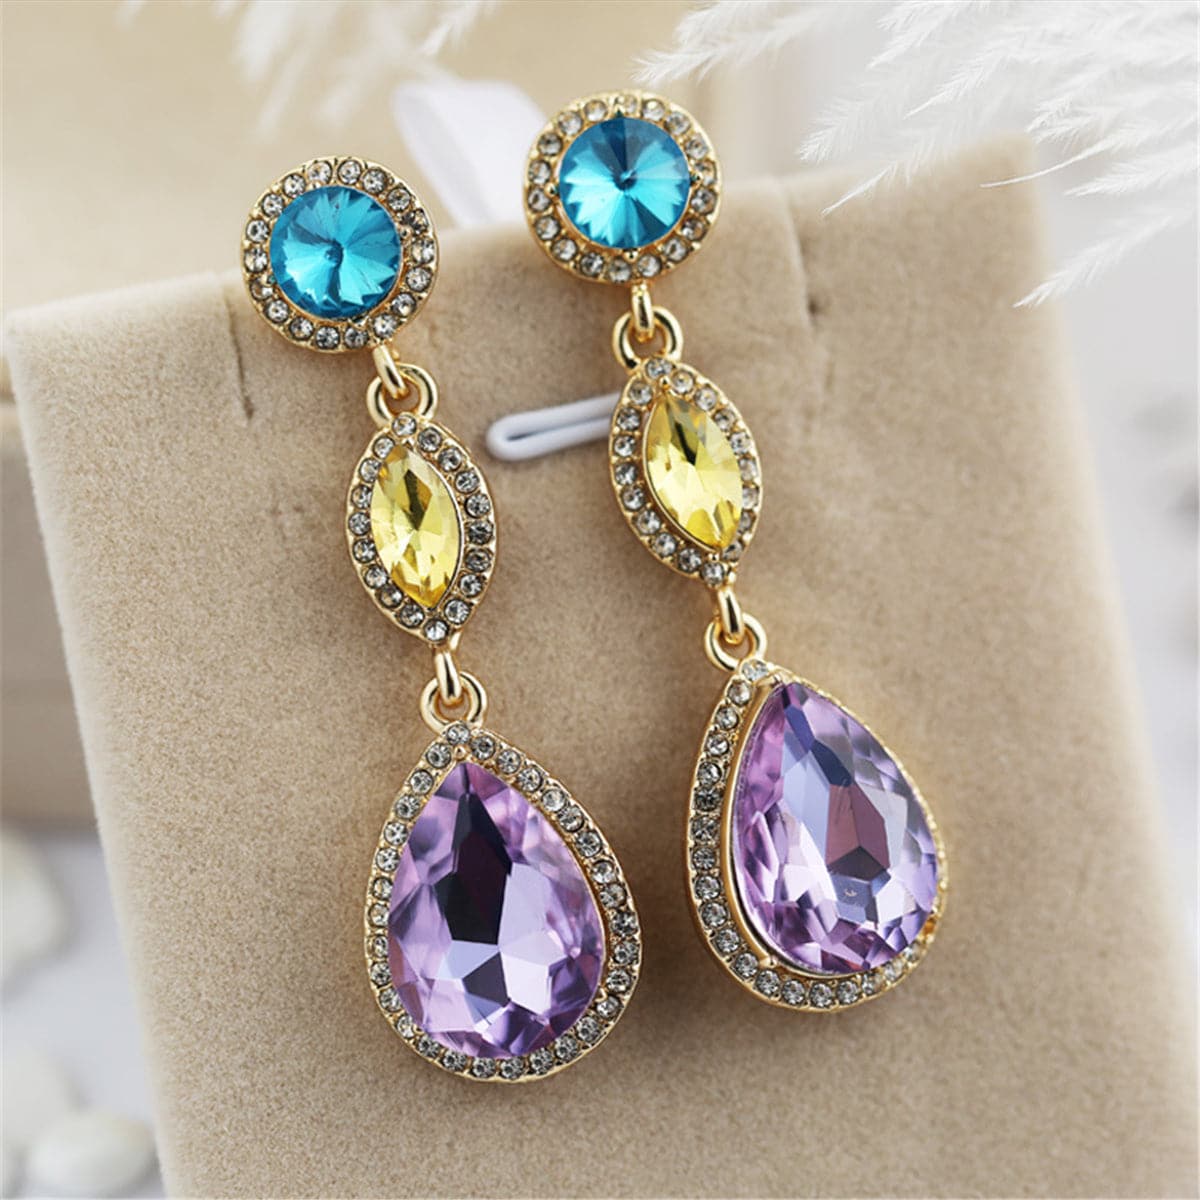 Purple & Blue Crystal Cubic Zirconia Teardrop Earrings